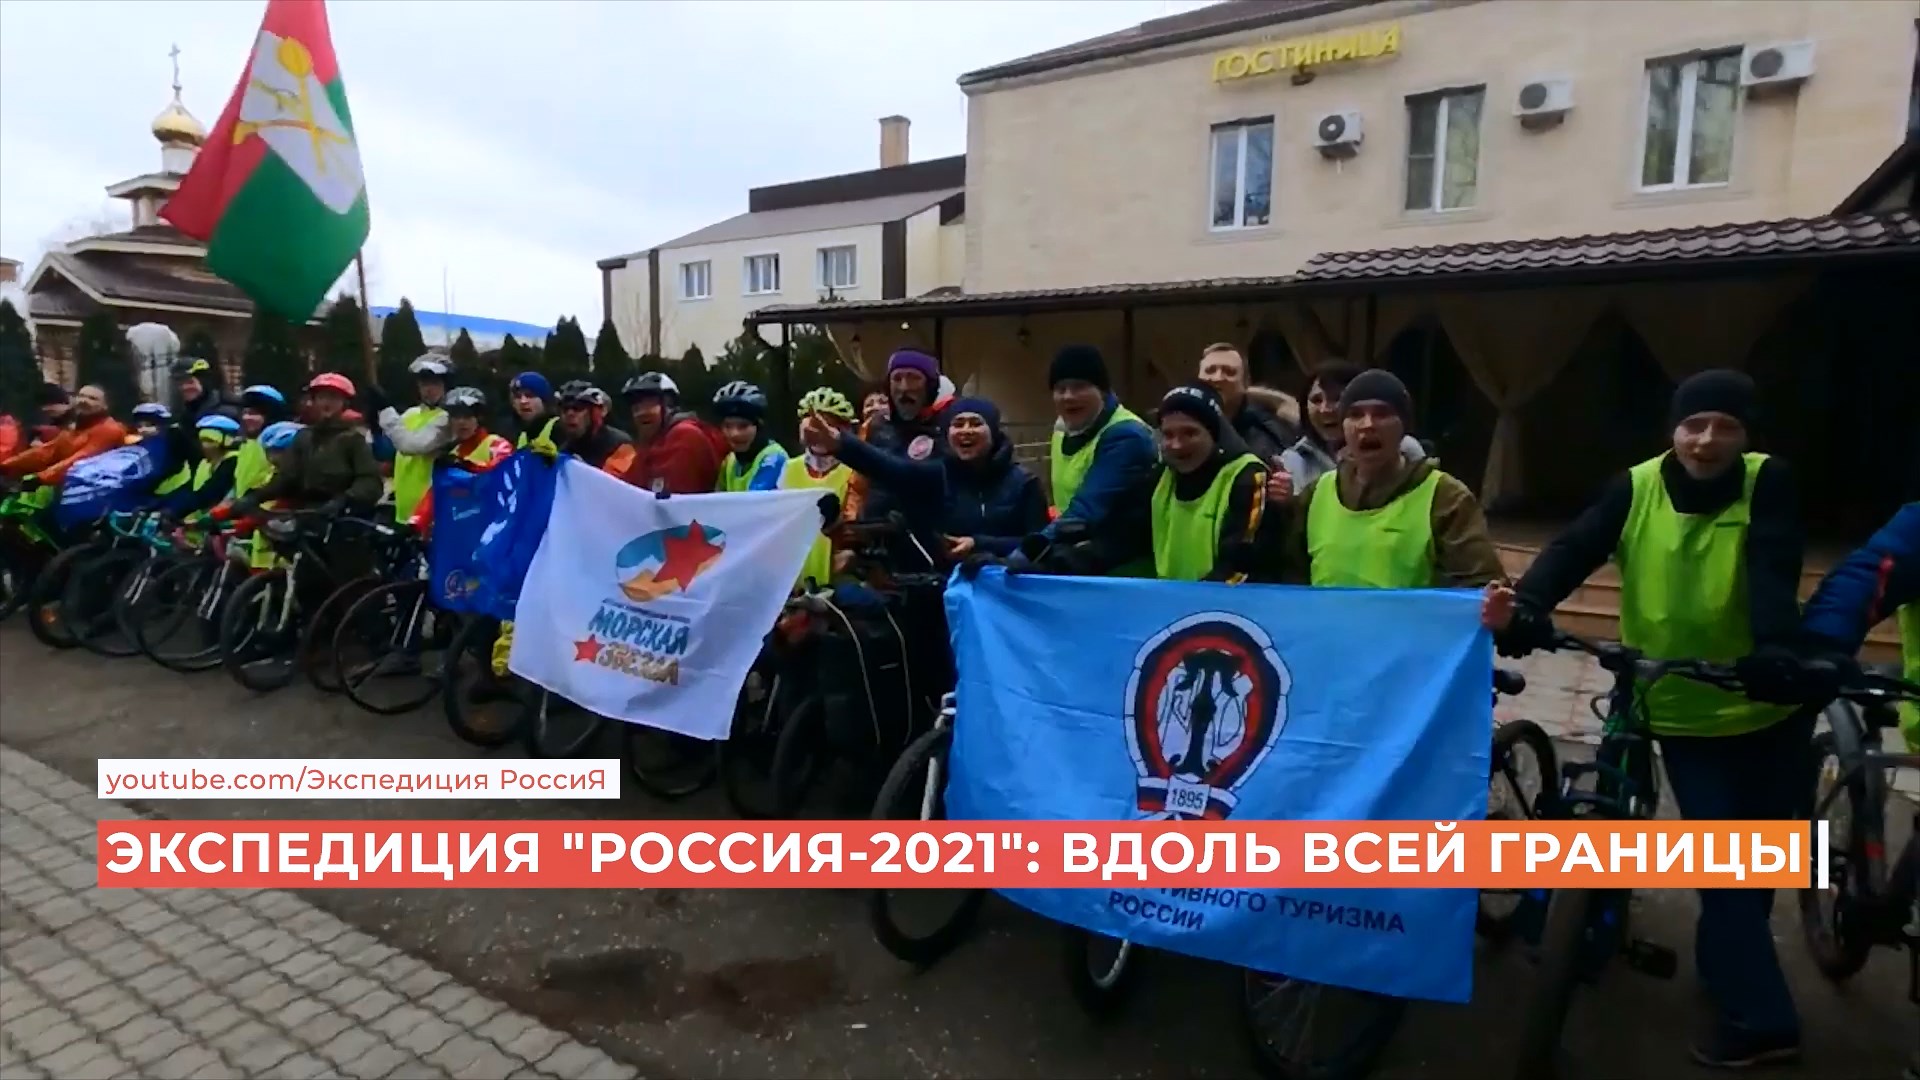 Обойти границы страны за 283 дня: в Ростове встретили участников экспедиции «Россия-2021»